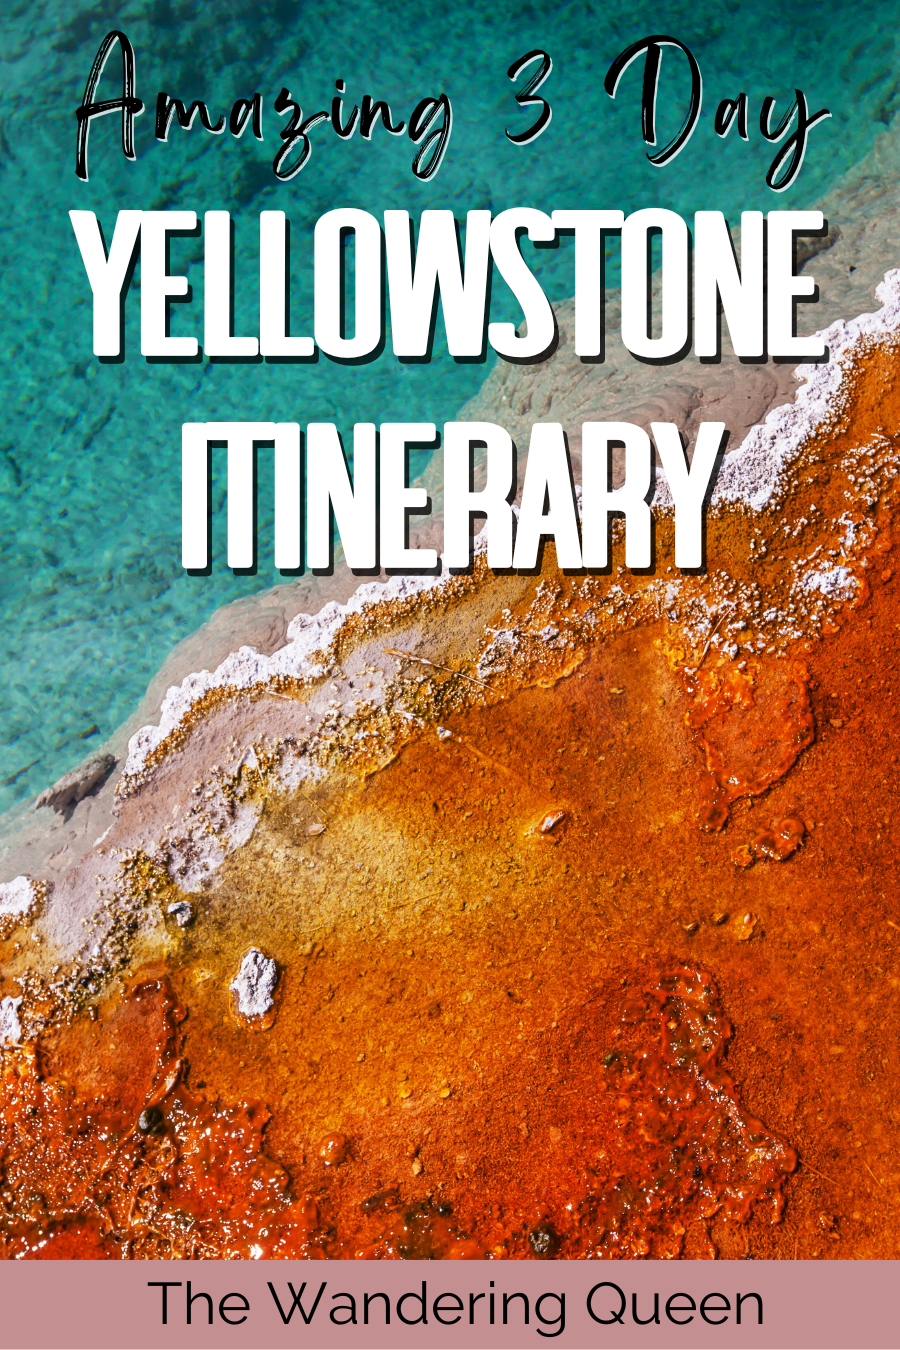 Yellowstone Itinerary